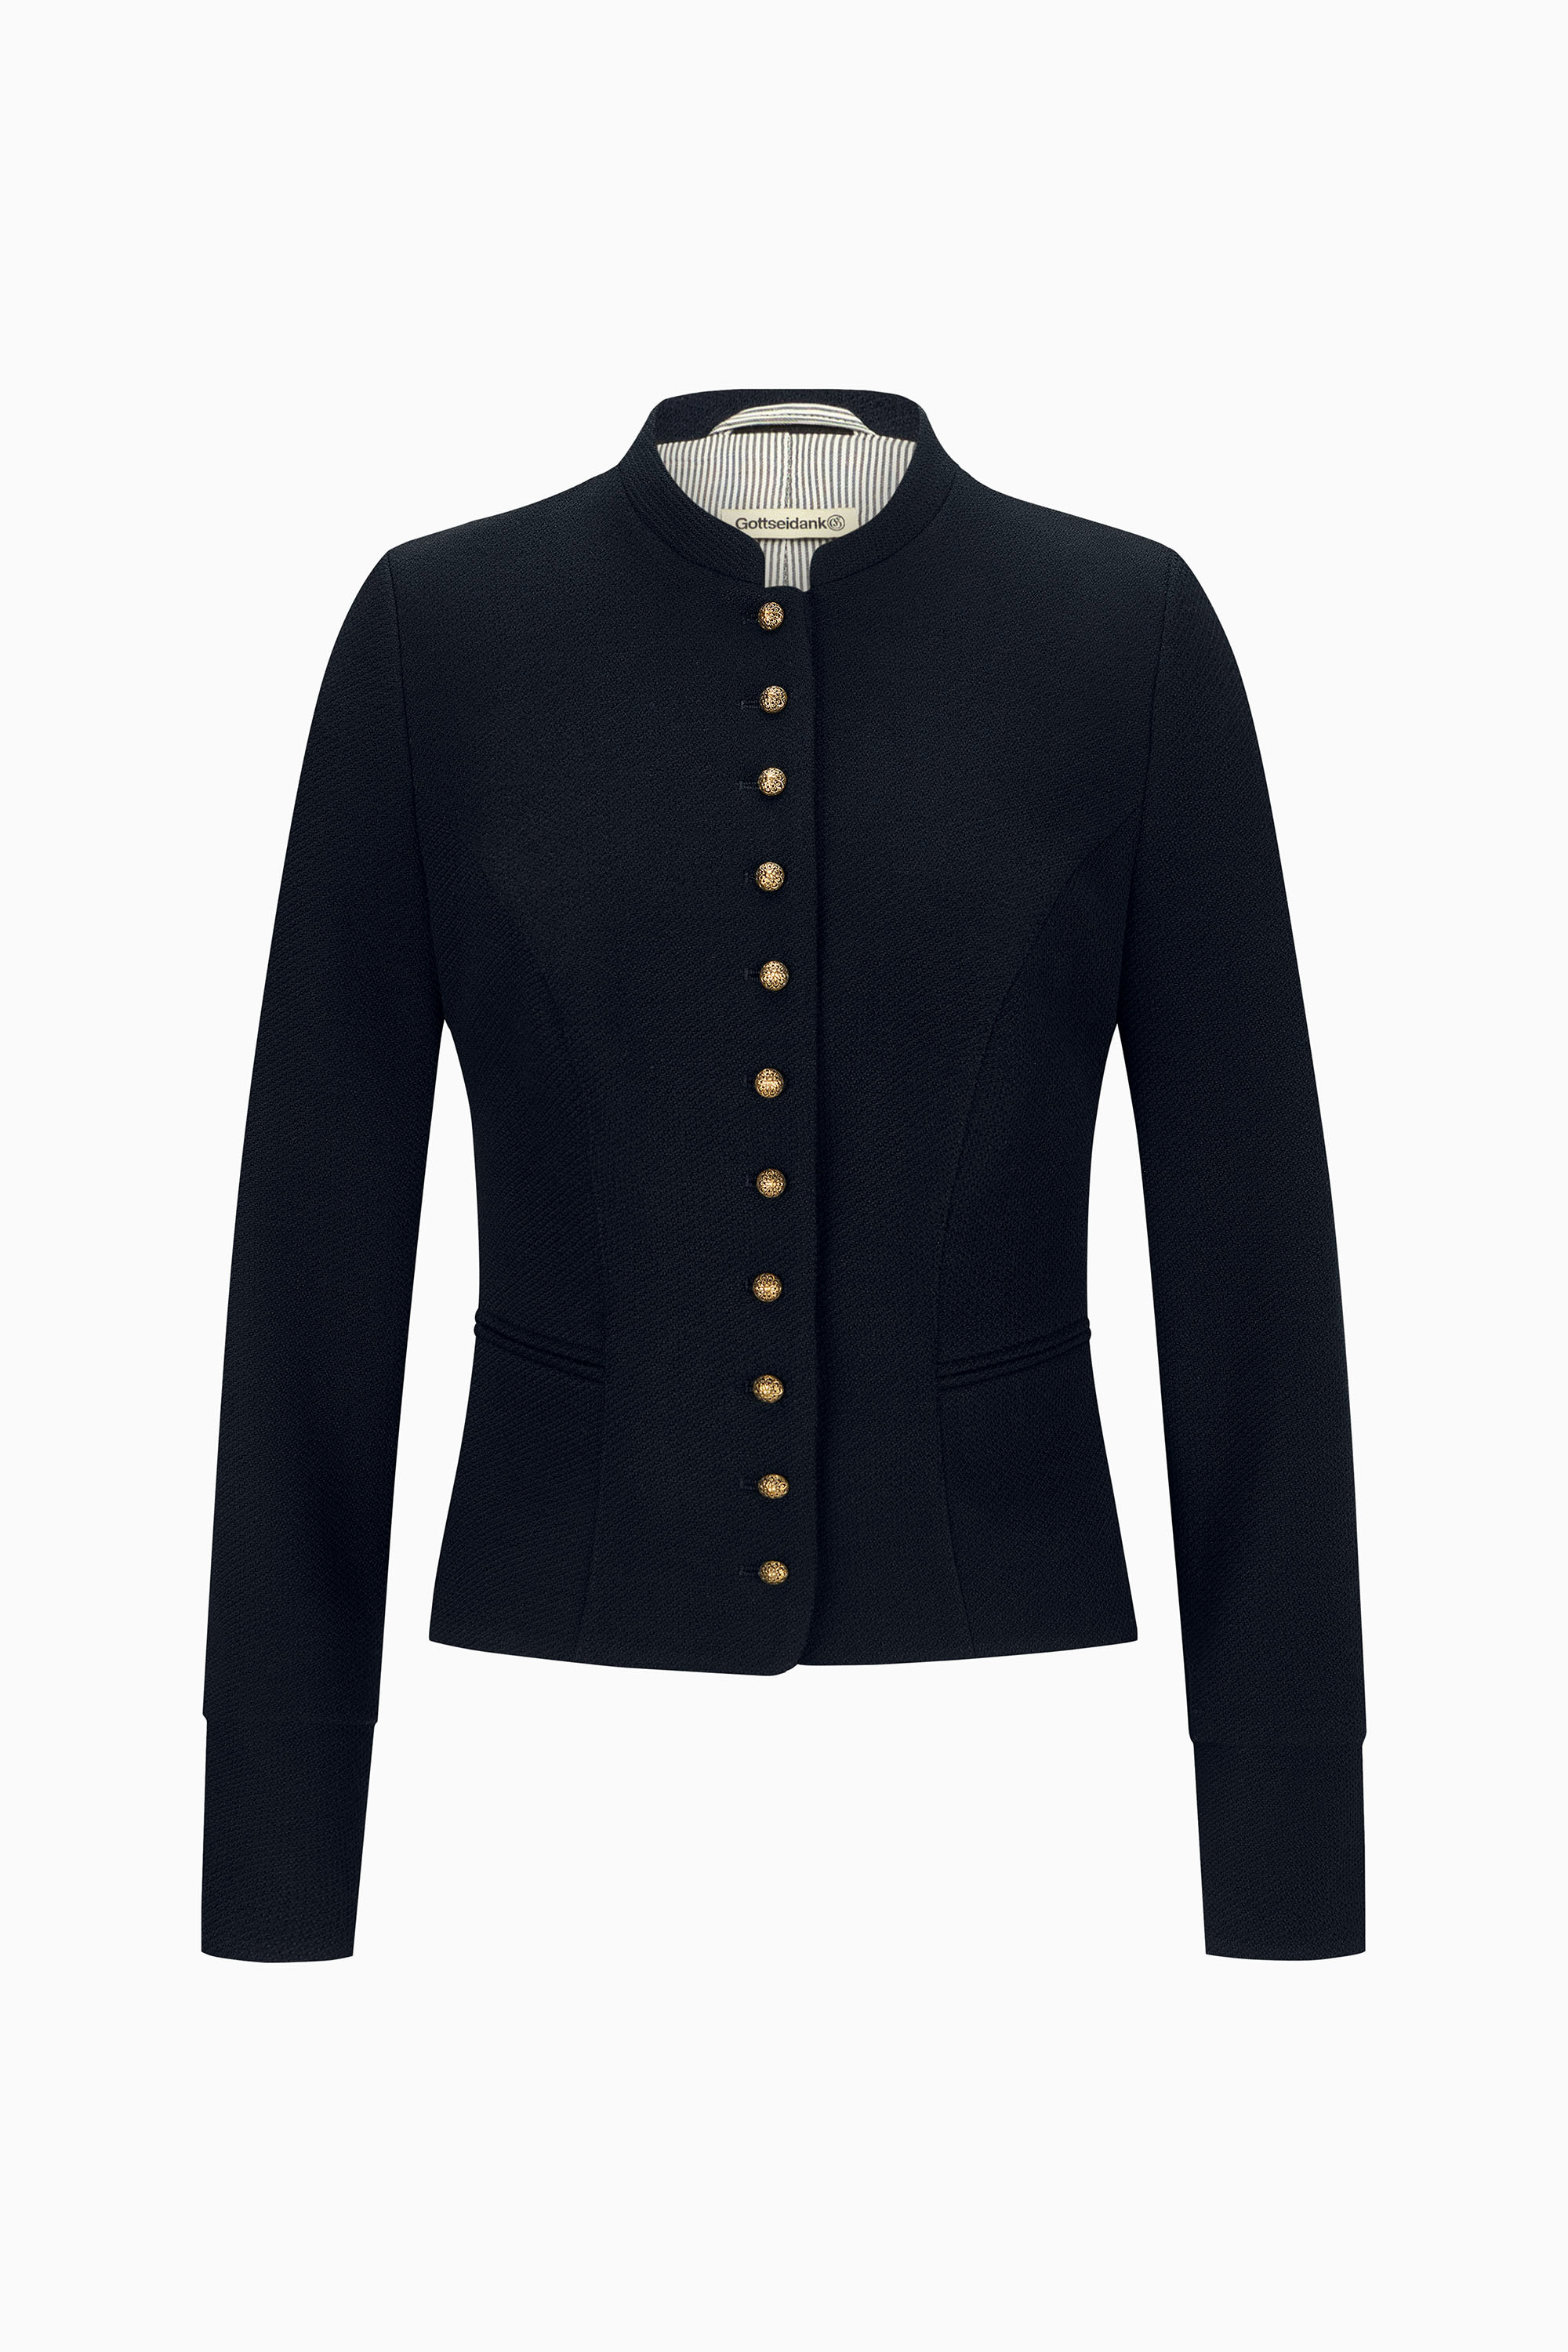 Tailliere Damenmiederjacke aus schwarzblauem Jersey mit Stehkragen, Wiener Naht und goldfarbenen Messingknöpfen.